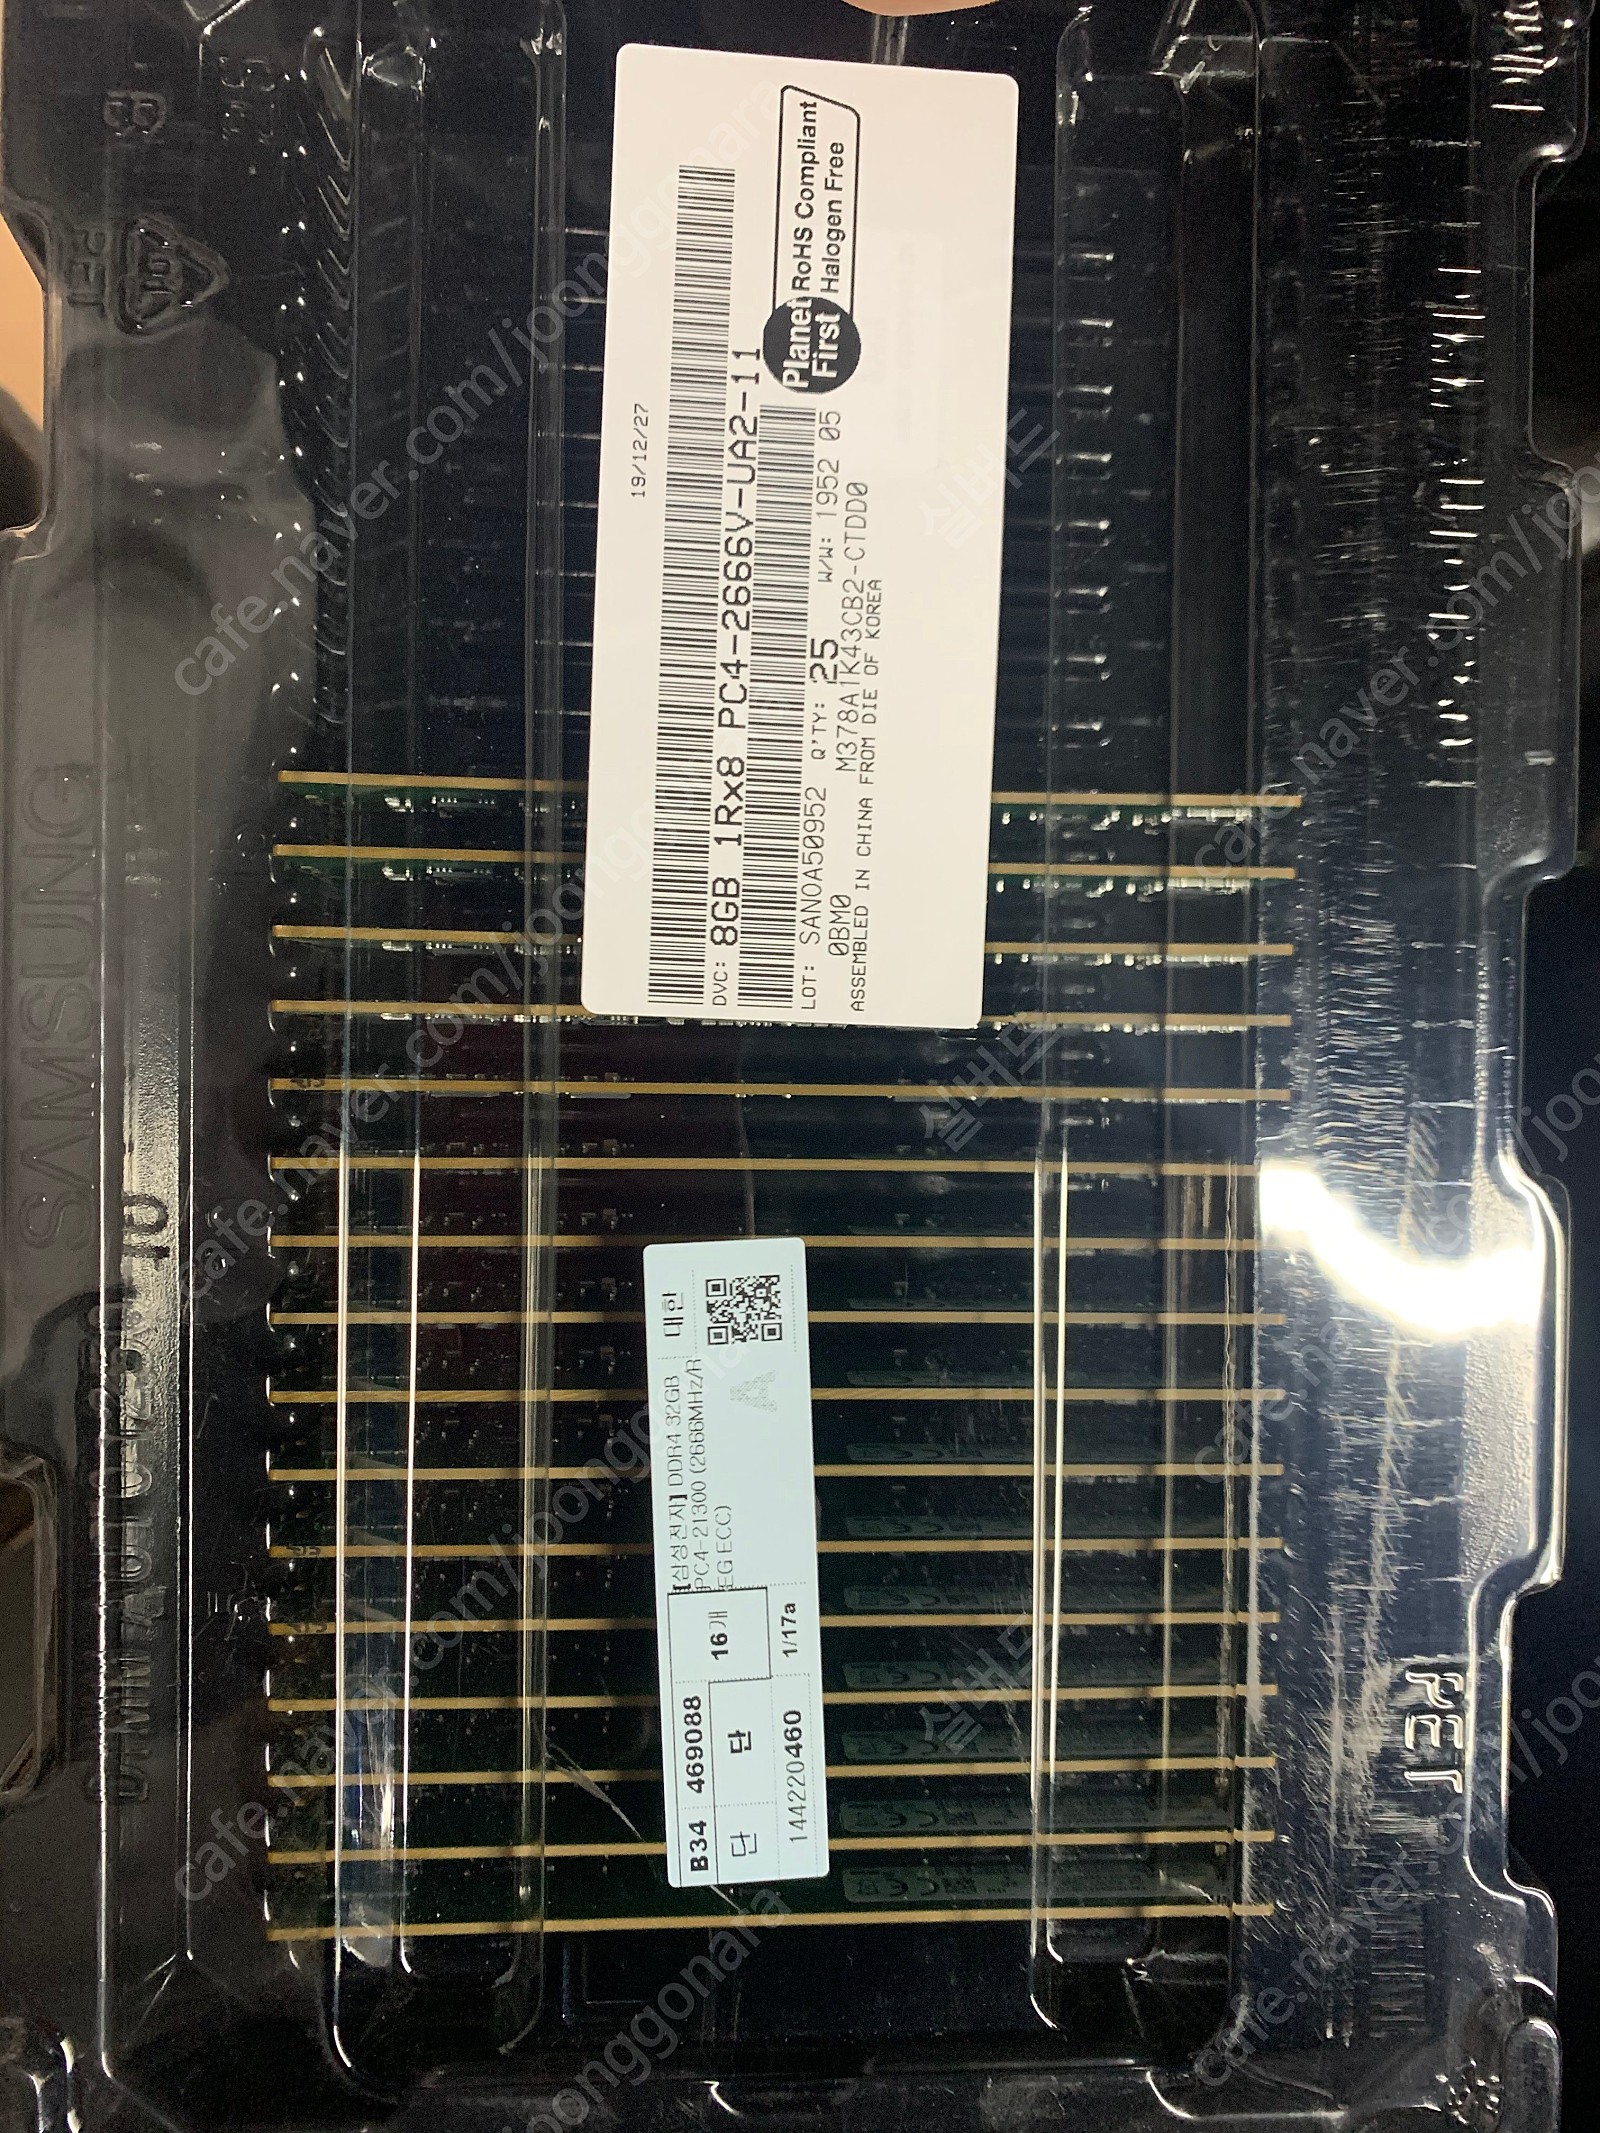 [삼성전자] DDR4 8GB PC4-21300 (2666MHz/REG ECC) - 서버용 15개(남은 수량 5개)